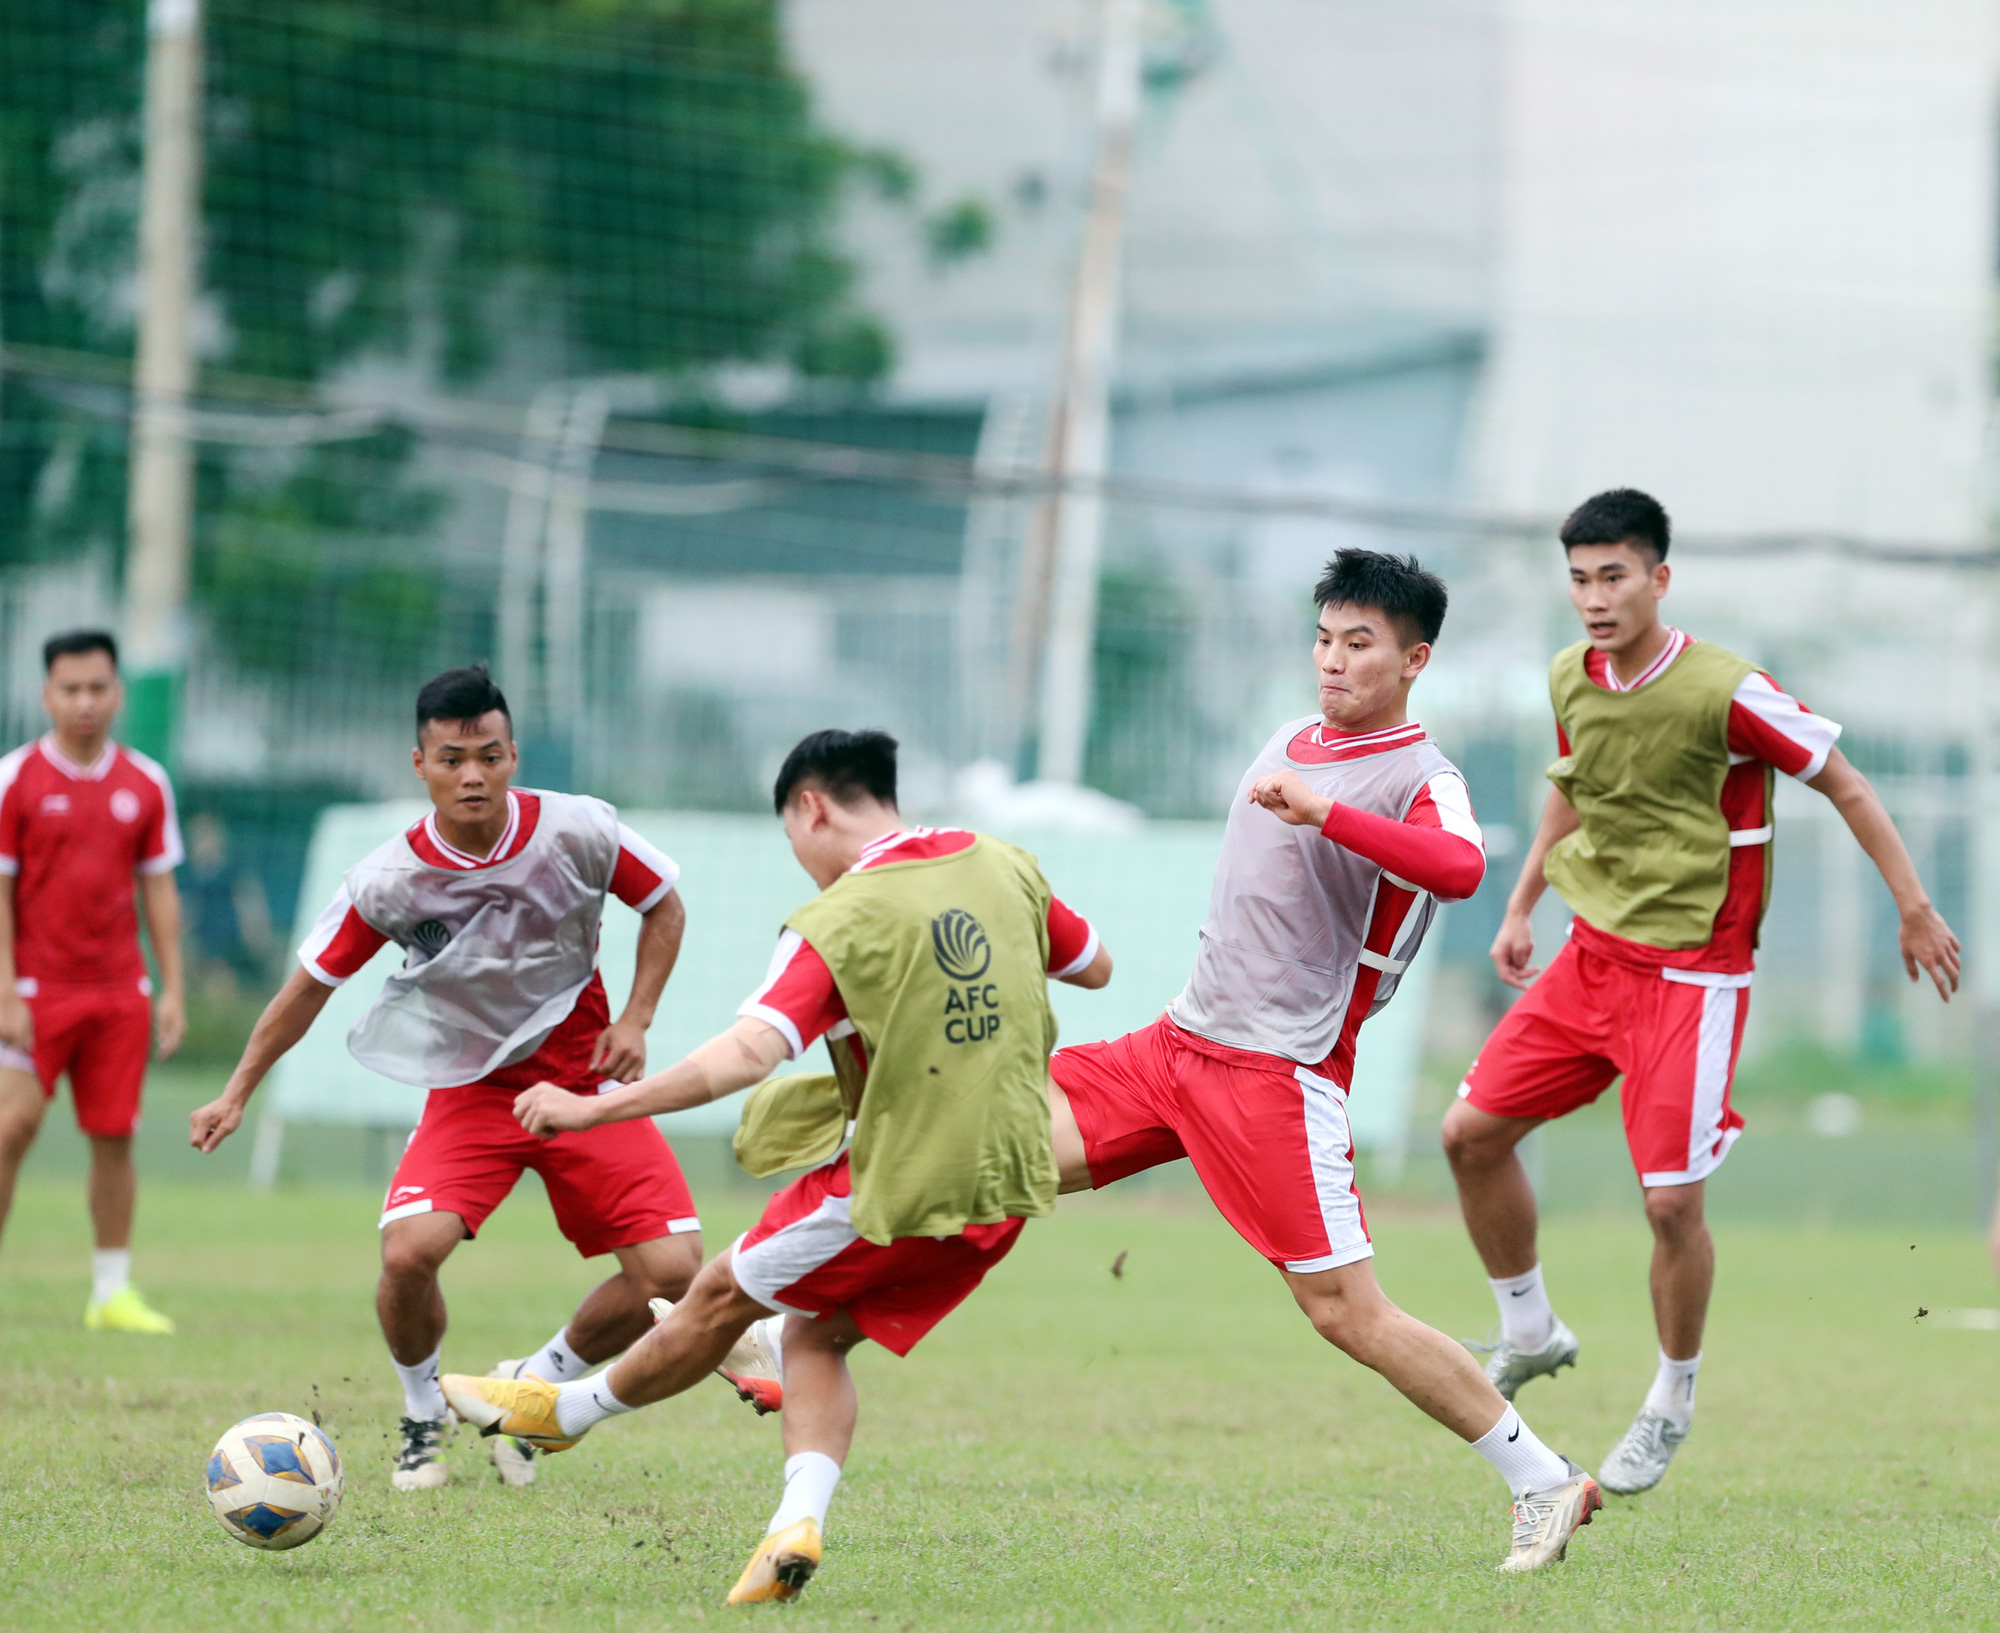 Tiền vệ Nguyễn Đức Chiến: “Viettel sẽ nỗ lực để thắng mọi trận đấu”